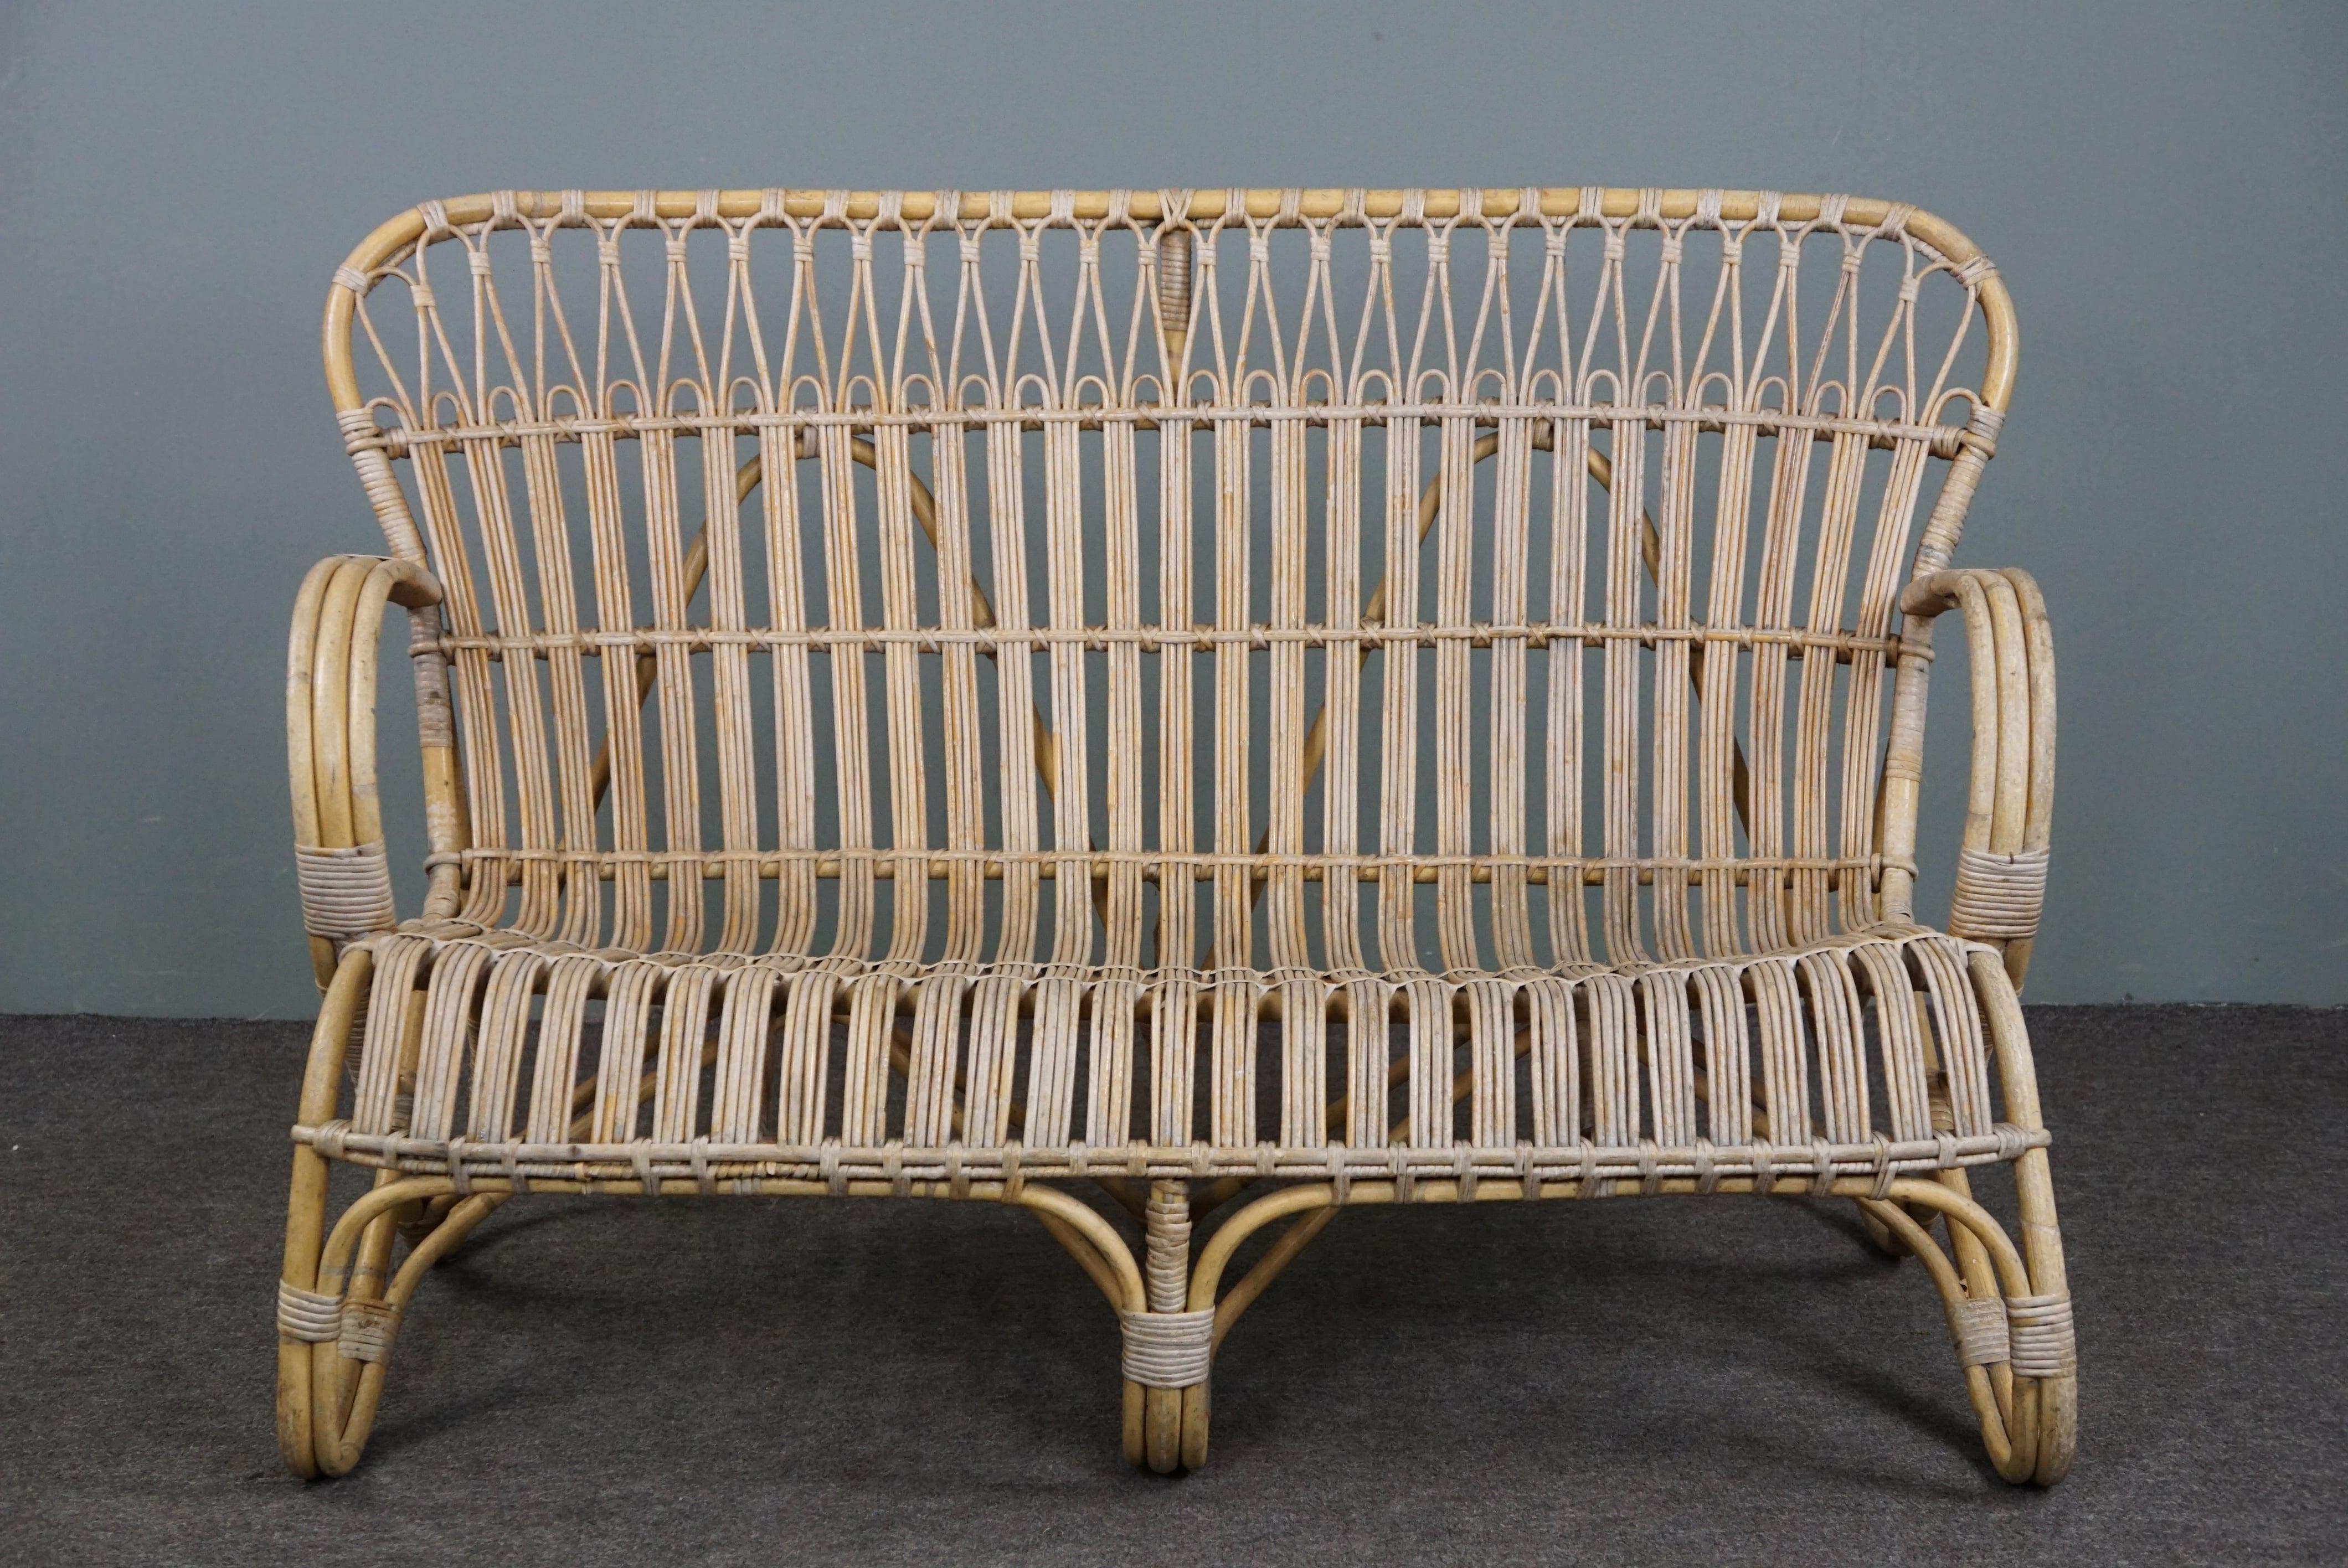 Angeboten wird dieses einzigartige und sehr seltene, wunderschön gestaltete Dutch Design 2-Sitzer-Sofa aus den 1950er Jahren in den Niederlanden.

Dieses Rattansofa Belse 8, 2-Sitzer, ist in gutem Zustand und hat ein zeitloses Design, eine schön